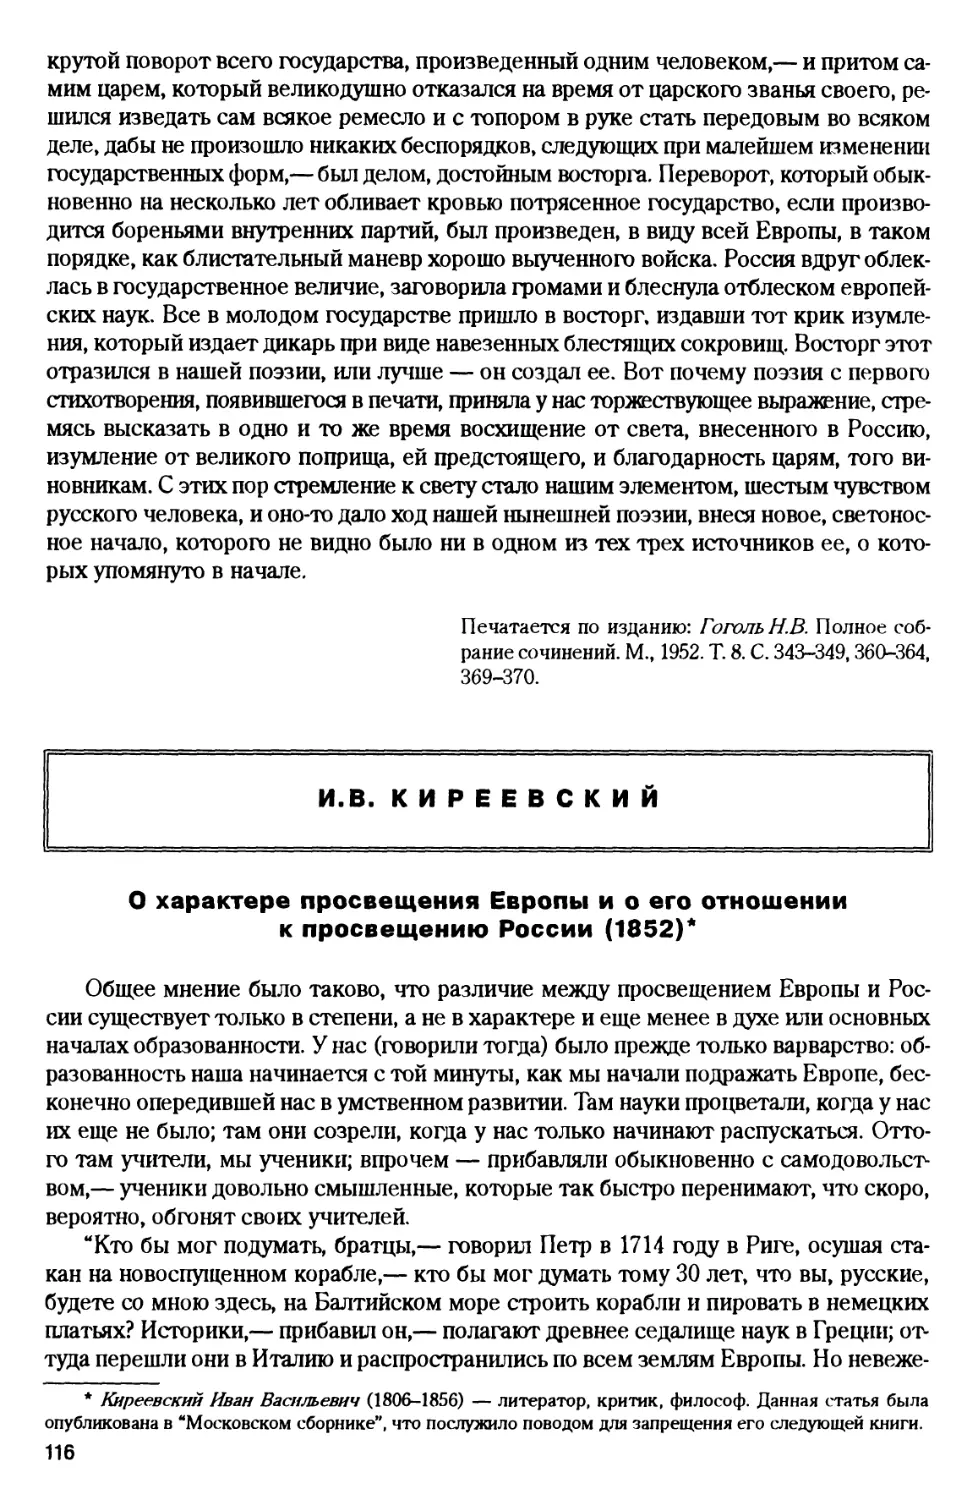 И.В. Киреевский